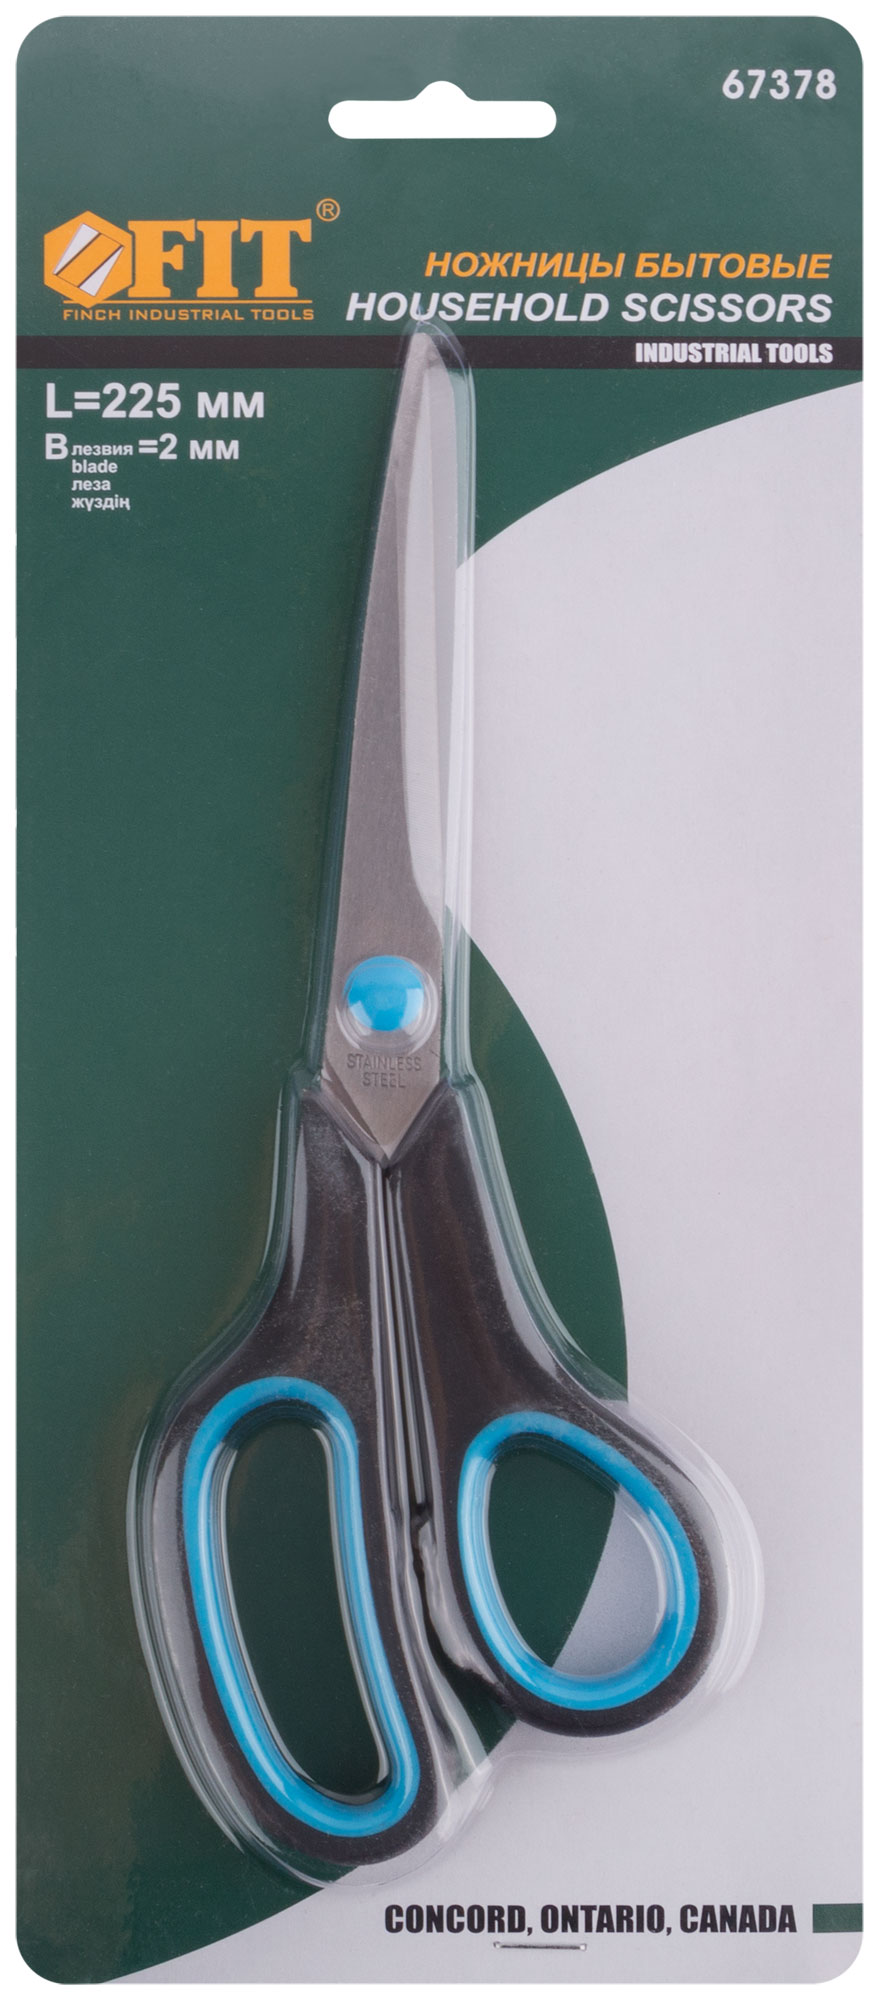 Ножницы бытовые нержавеющие, прорезиненные ручки, толщина лезвия 2,0 мм, 225 мм